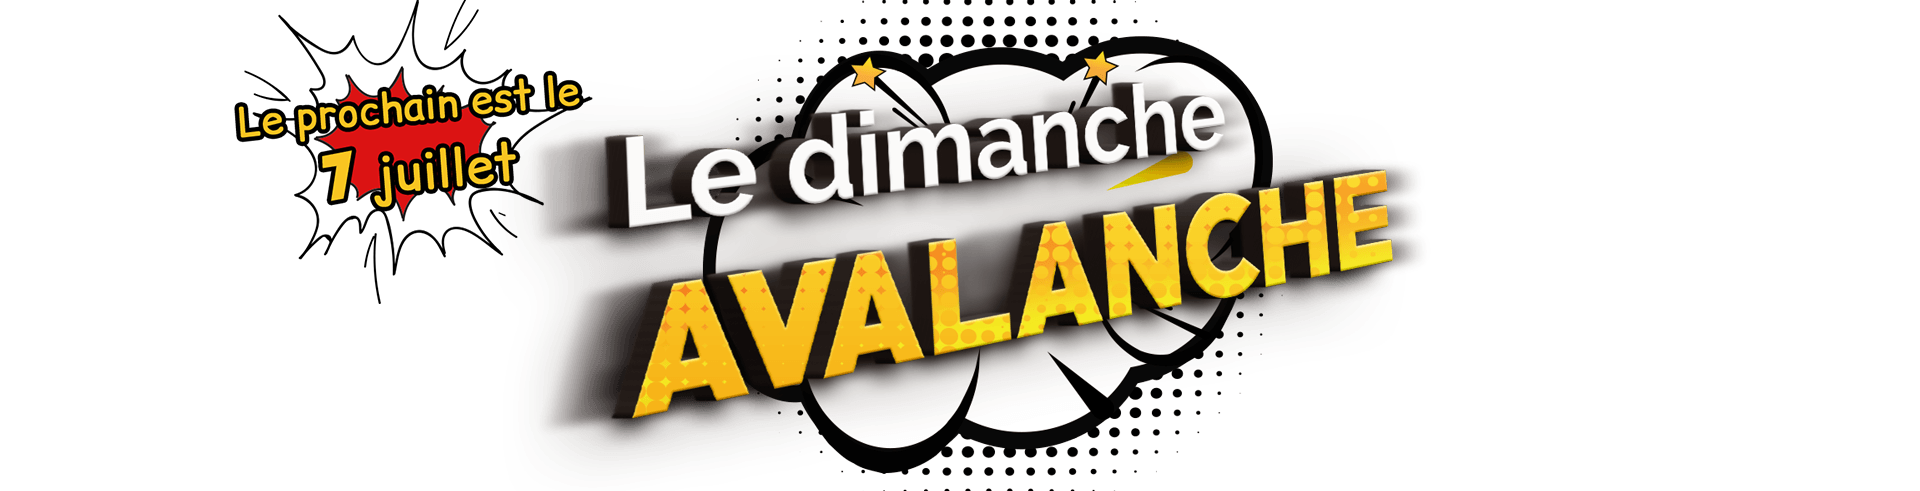 Logo du Dimanche Avalanche